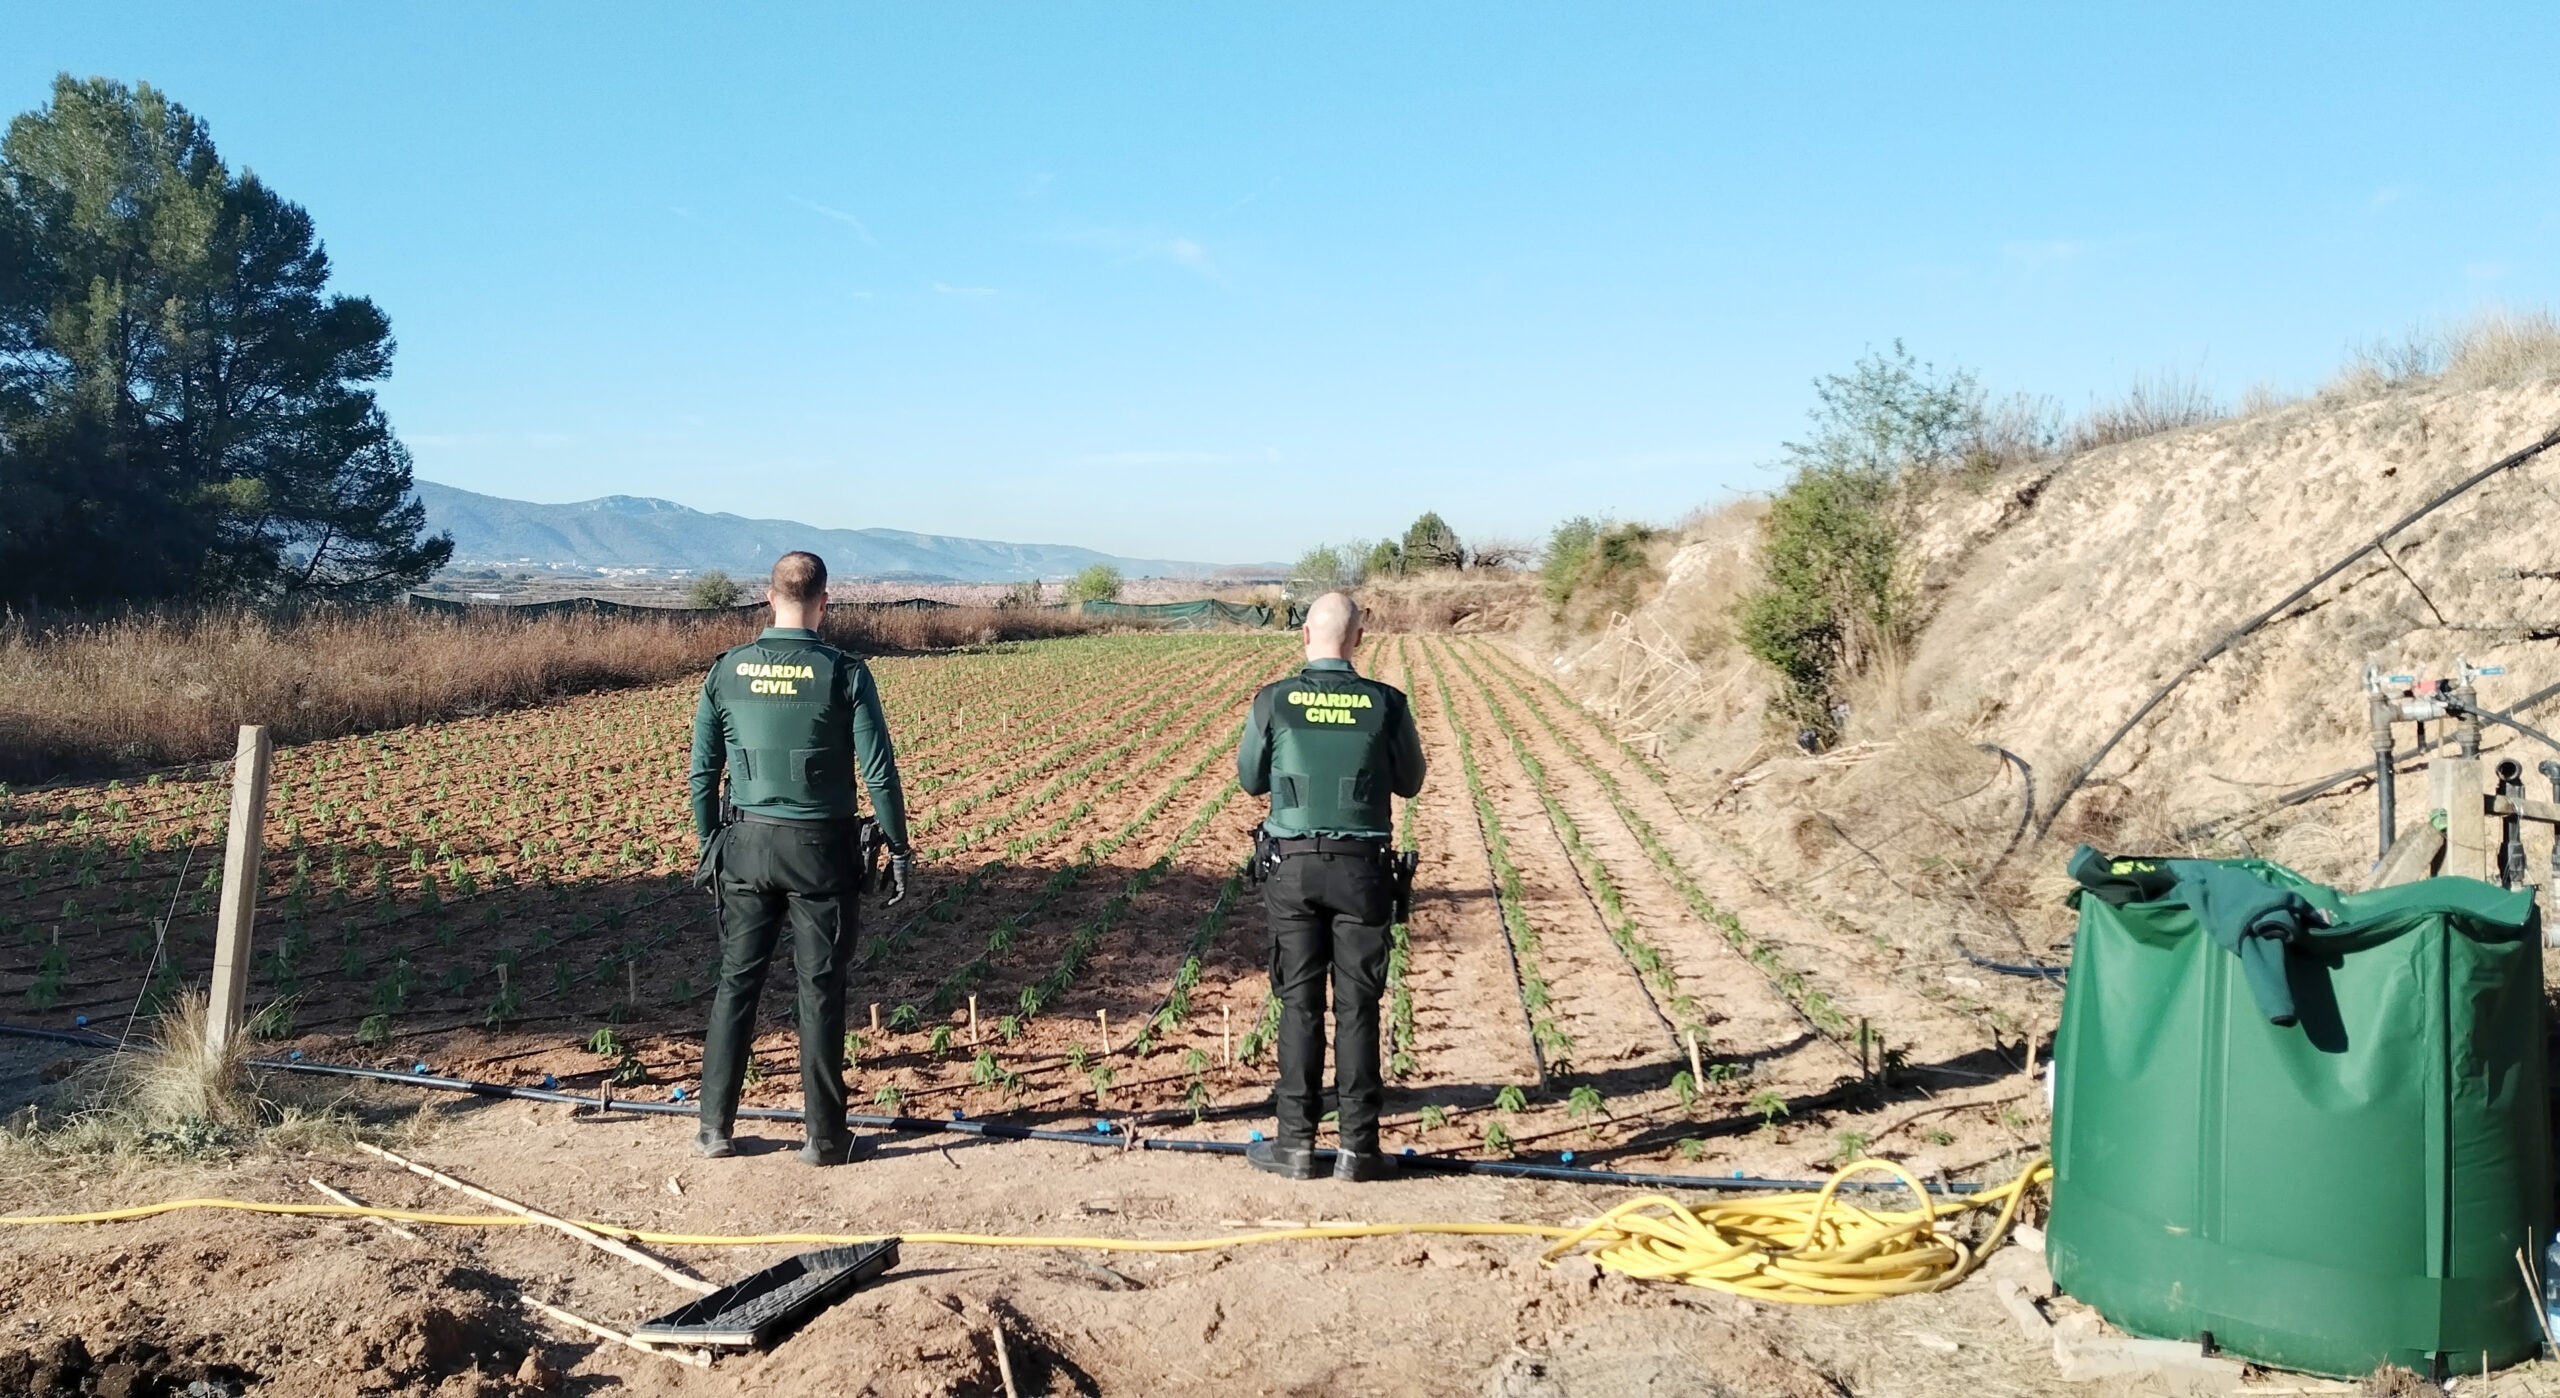 Guàrdies civils a una plantació de marihuana desmantellada